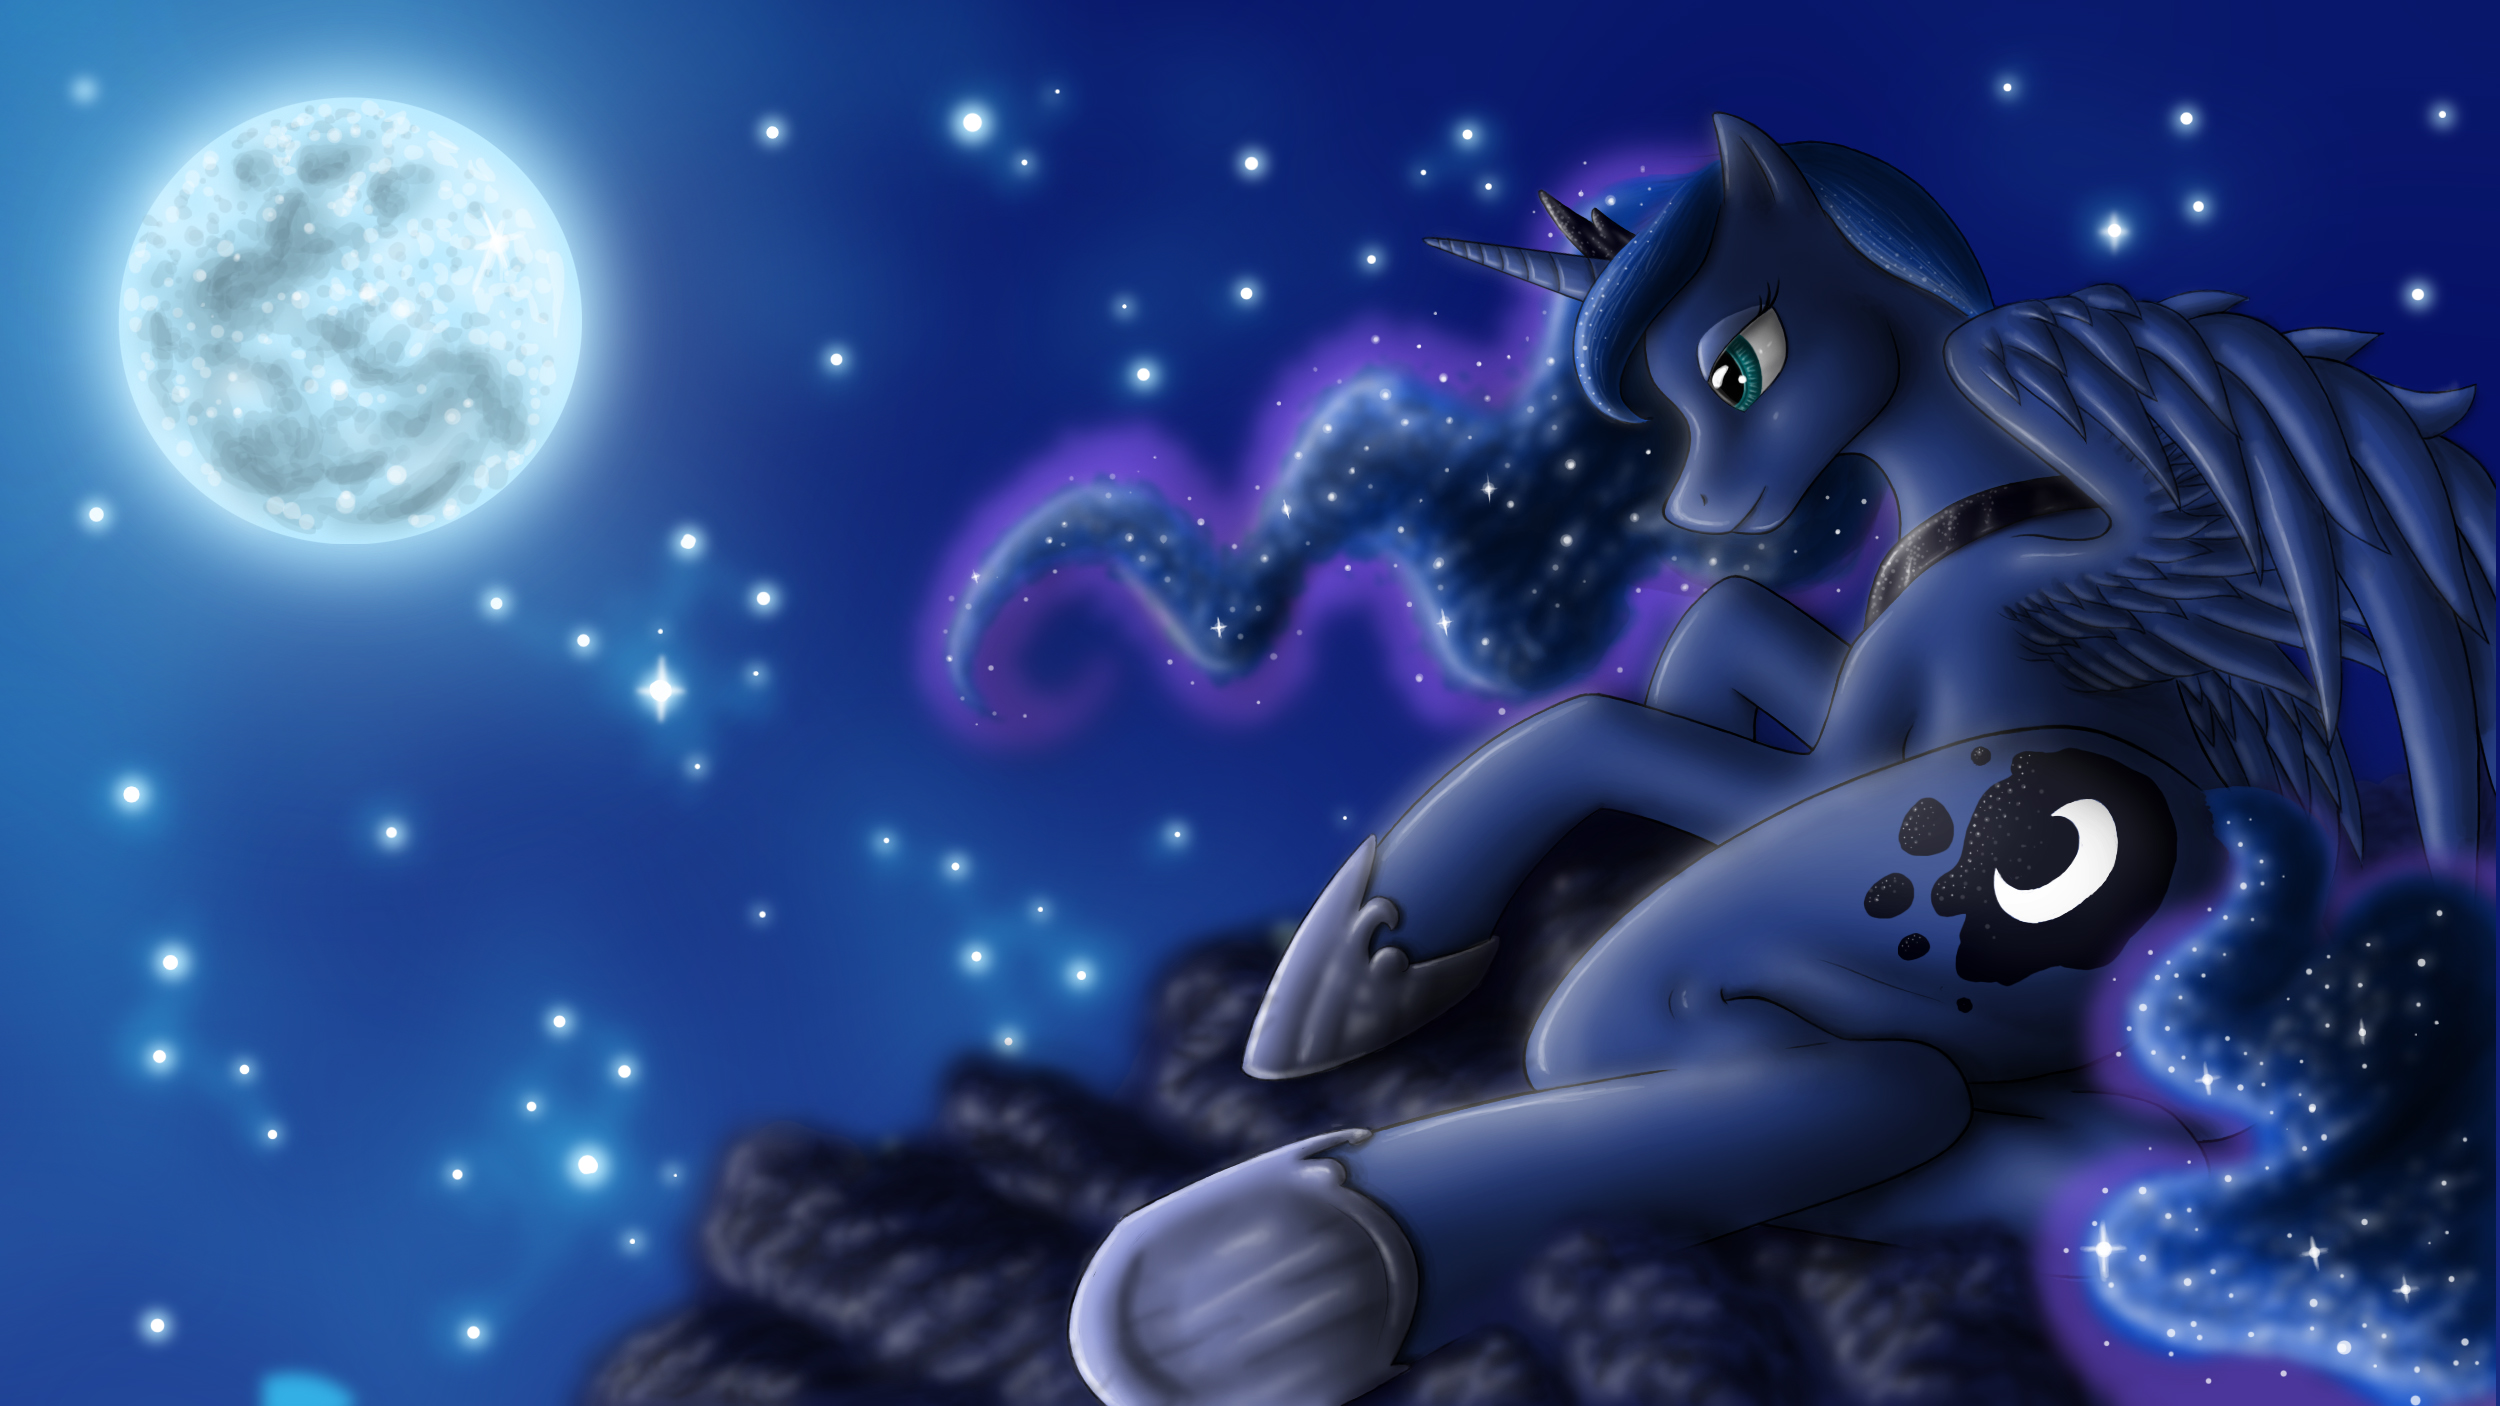 Luna's Night by AnaduKune